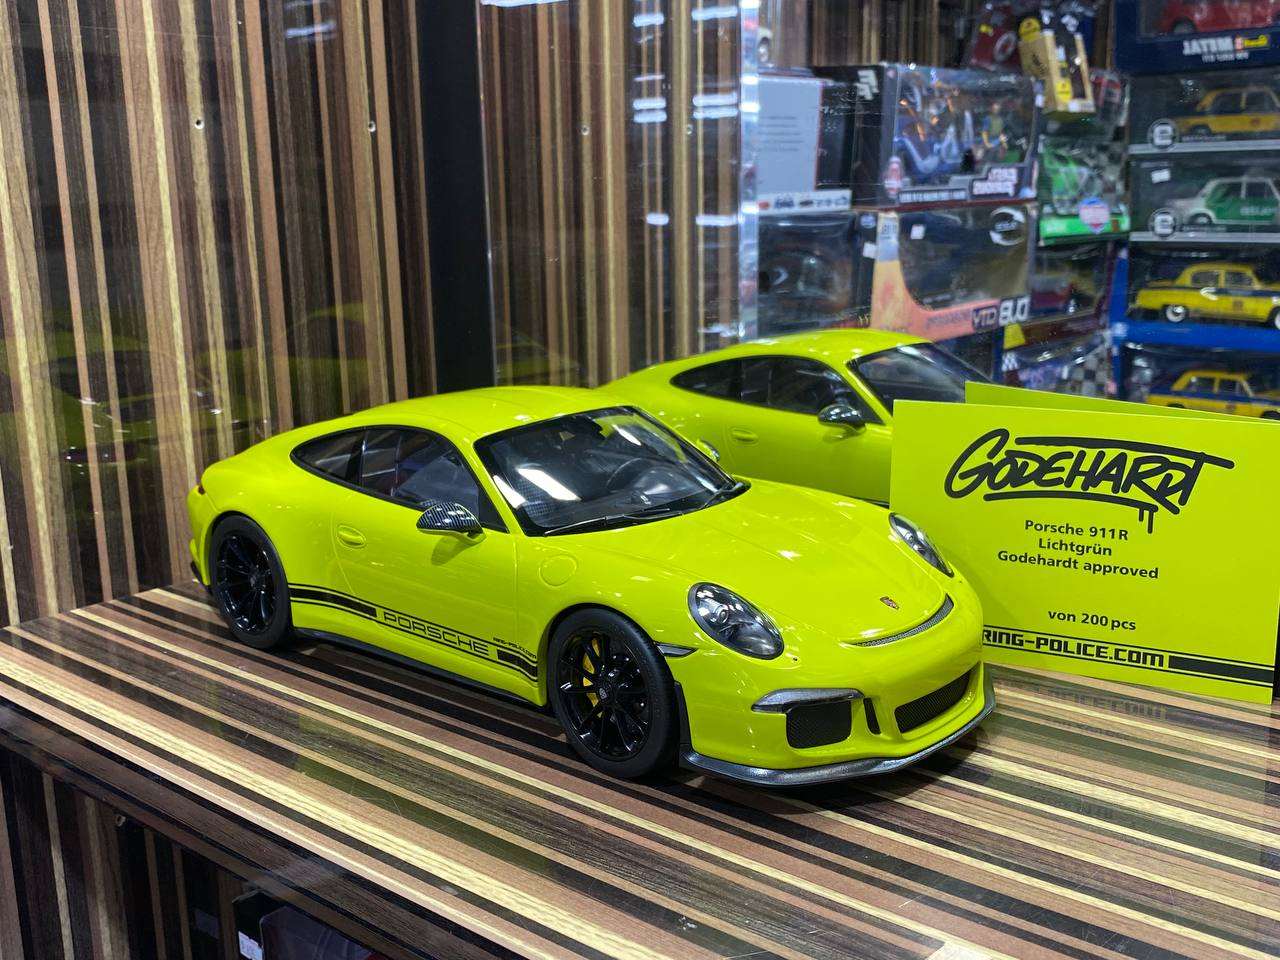 1/12 Minichamps Metal Diecast - Porsche 911 R (991.1) 2016 in Exclusive Acid Green|Sold in Dturman.com Dubai UAE.